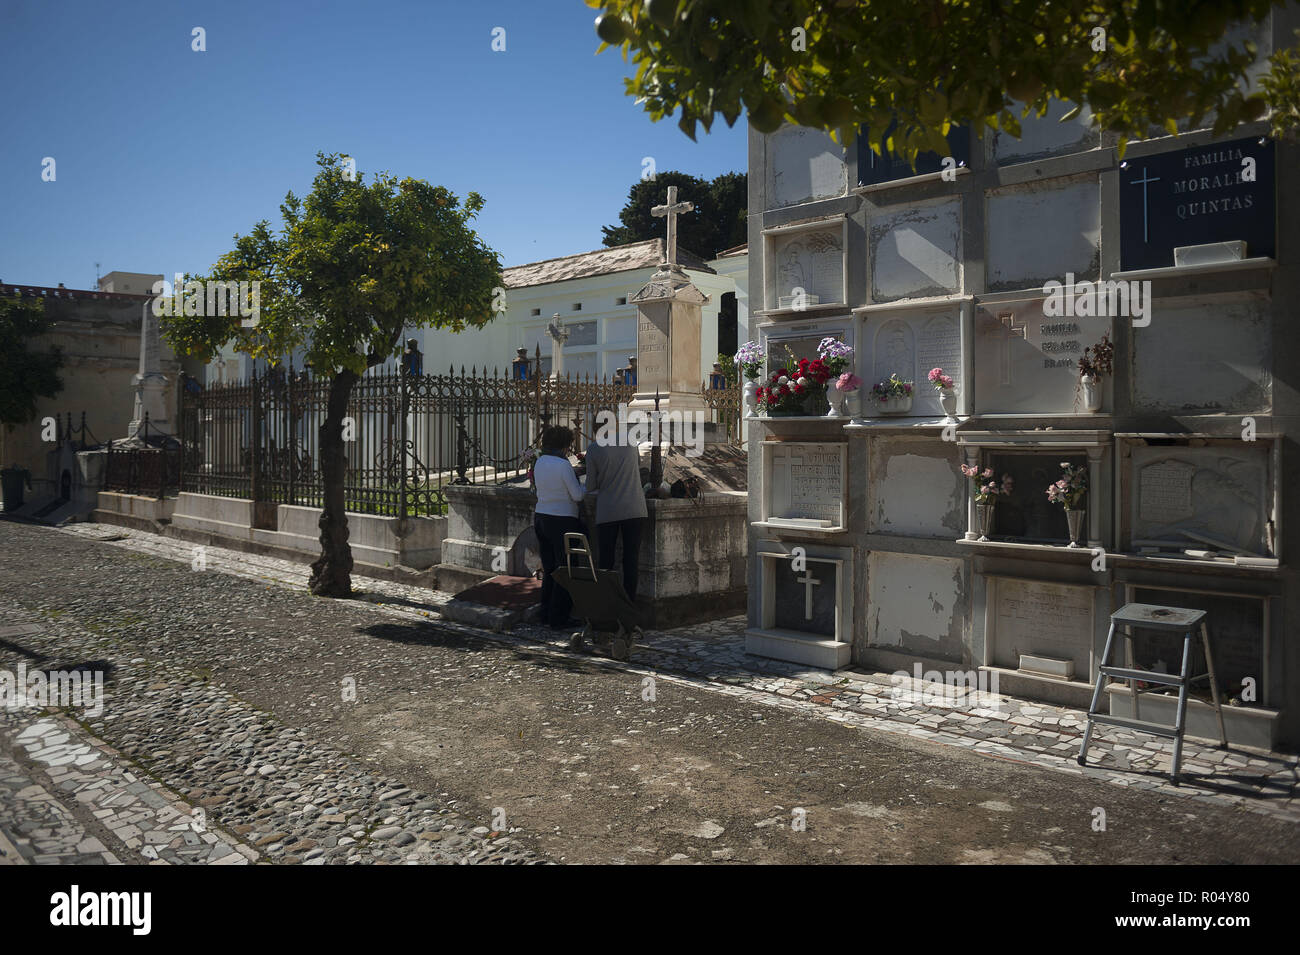 Noviembre 1, 2018 - Málaga, Málaga, España - Mujeres visto poner flores en  una tumba durante todo el santo día en el cementerio de San Miguel en Málaga.  (Crédito de la Imagen: ©